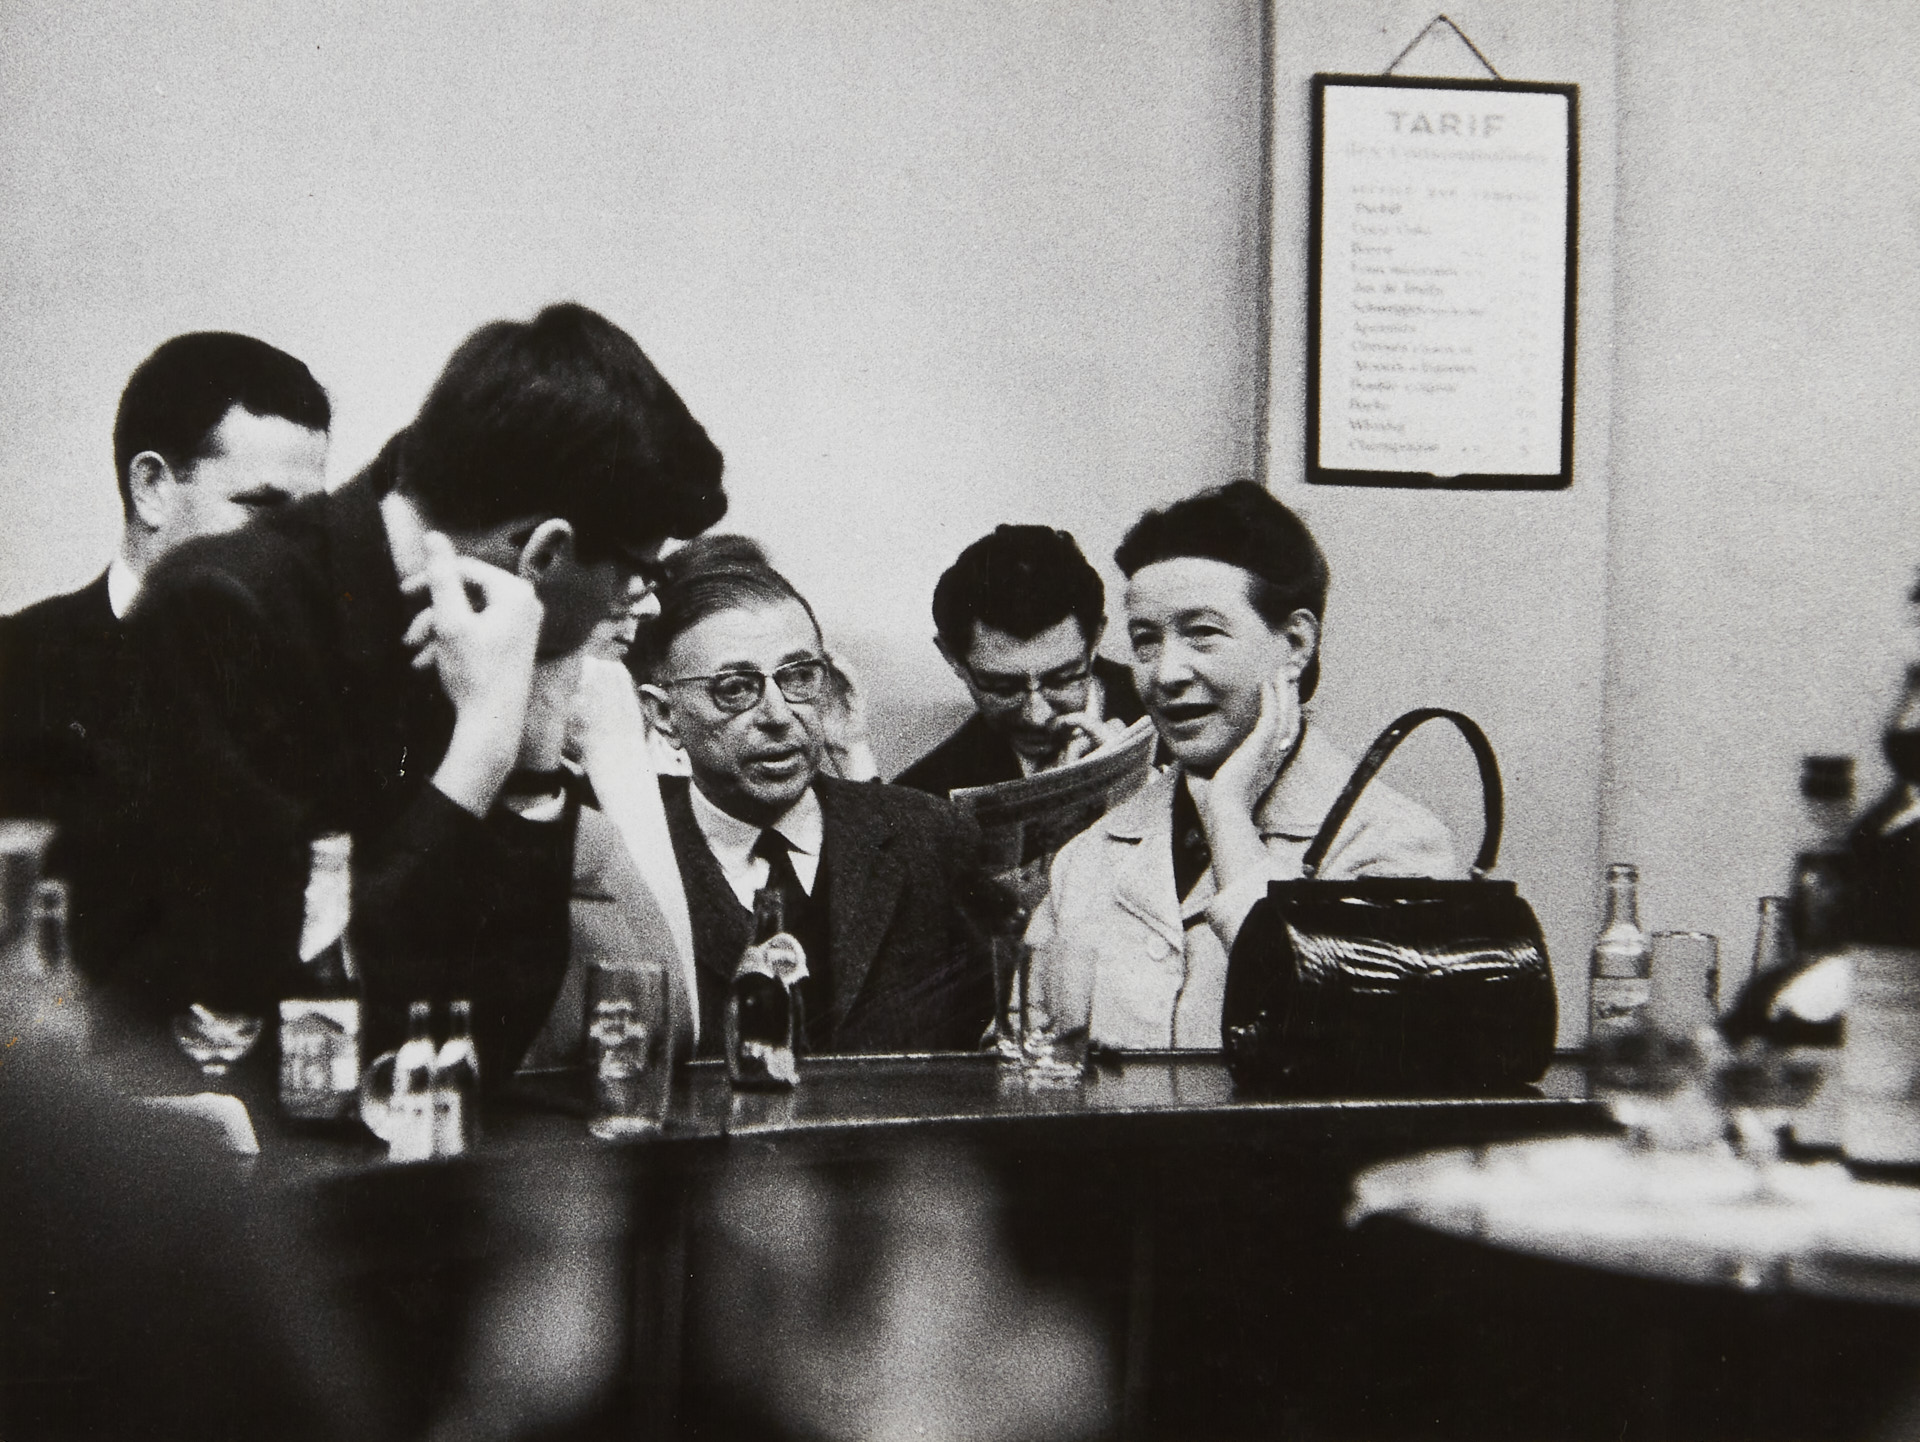 Jean Paul Sartre and Simone de Beauvoir, Théâtre des Champs Elysées 1950*